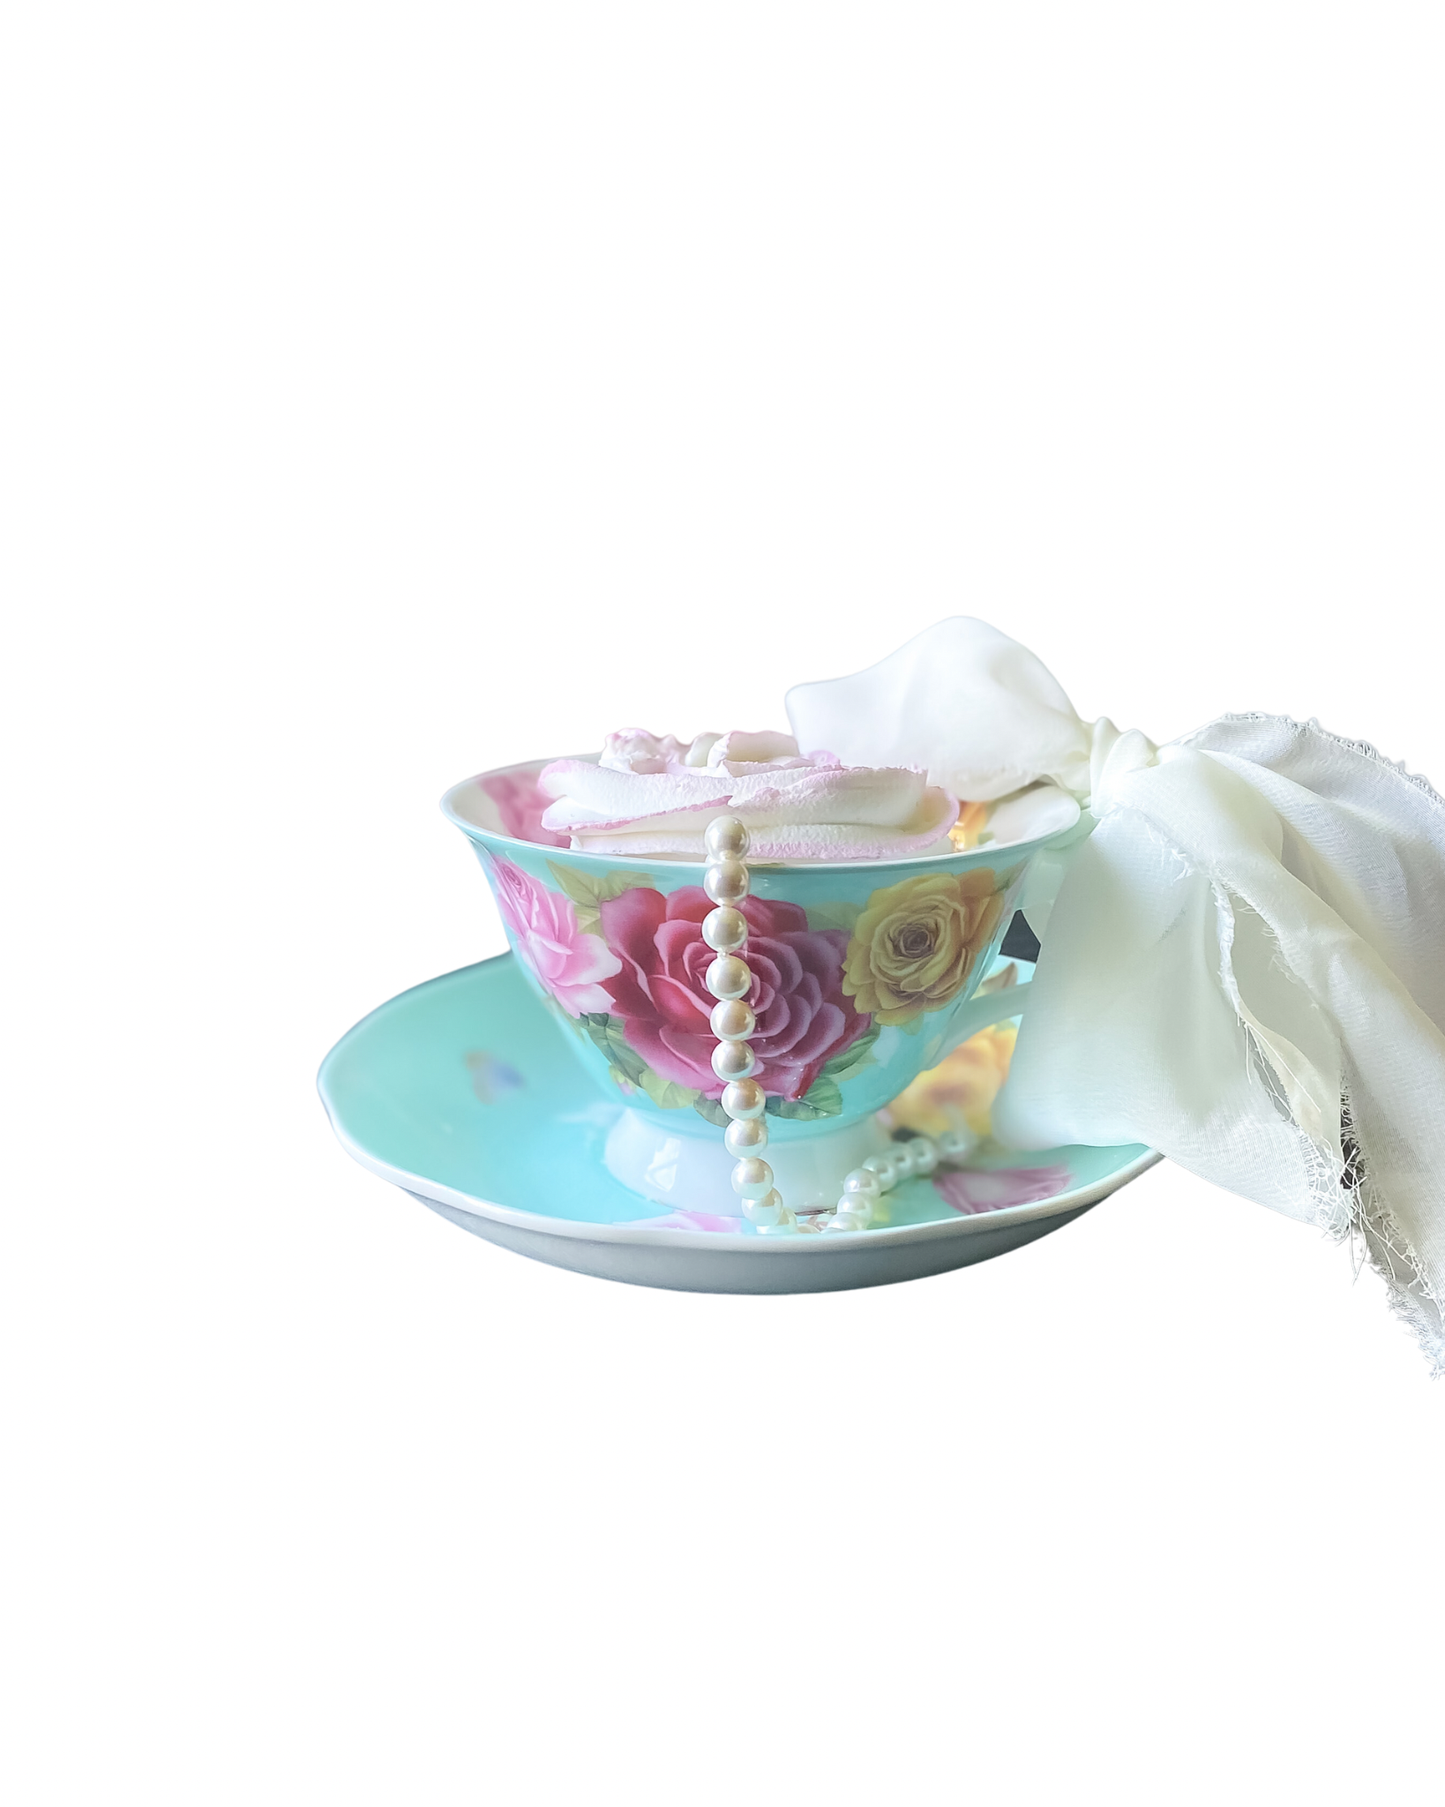 Everything Dawn Blue Pink Roses Teacup Fake Cupcake